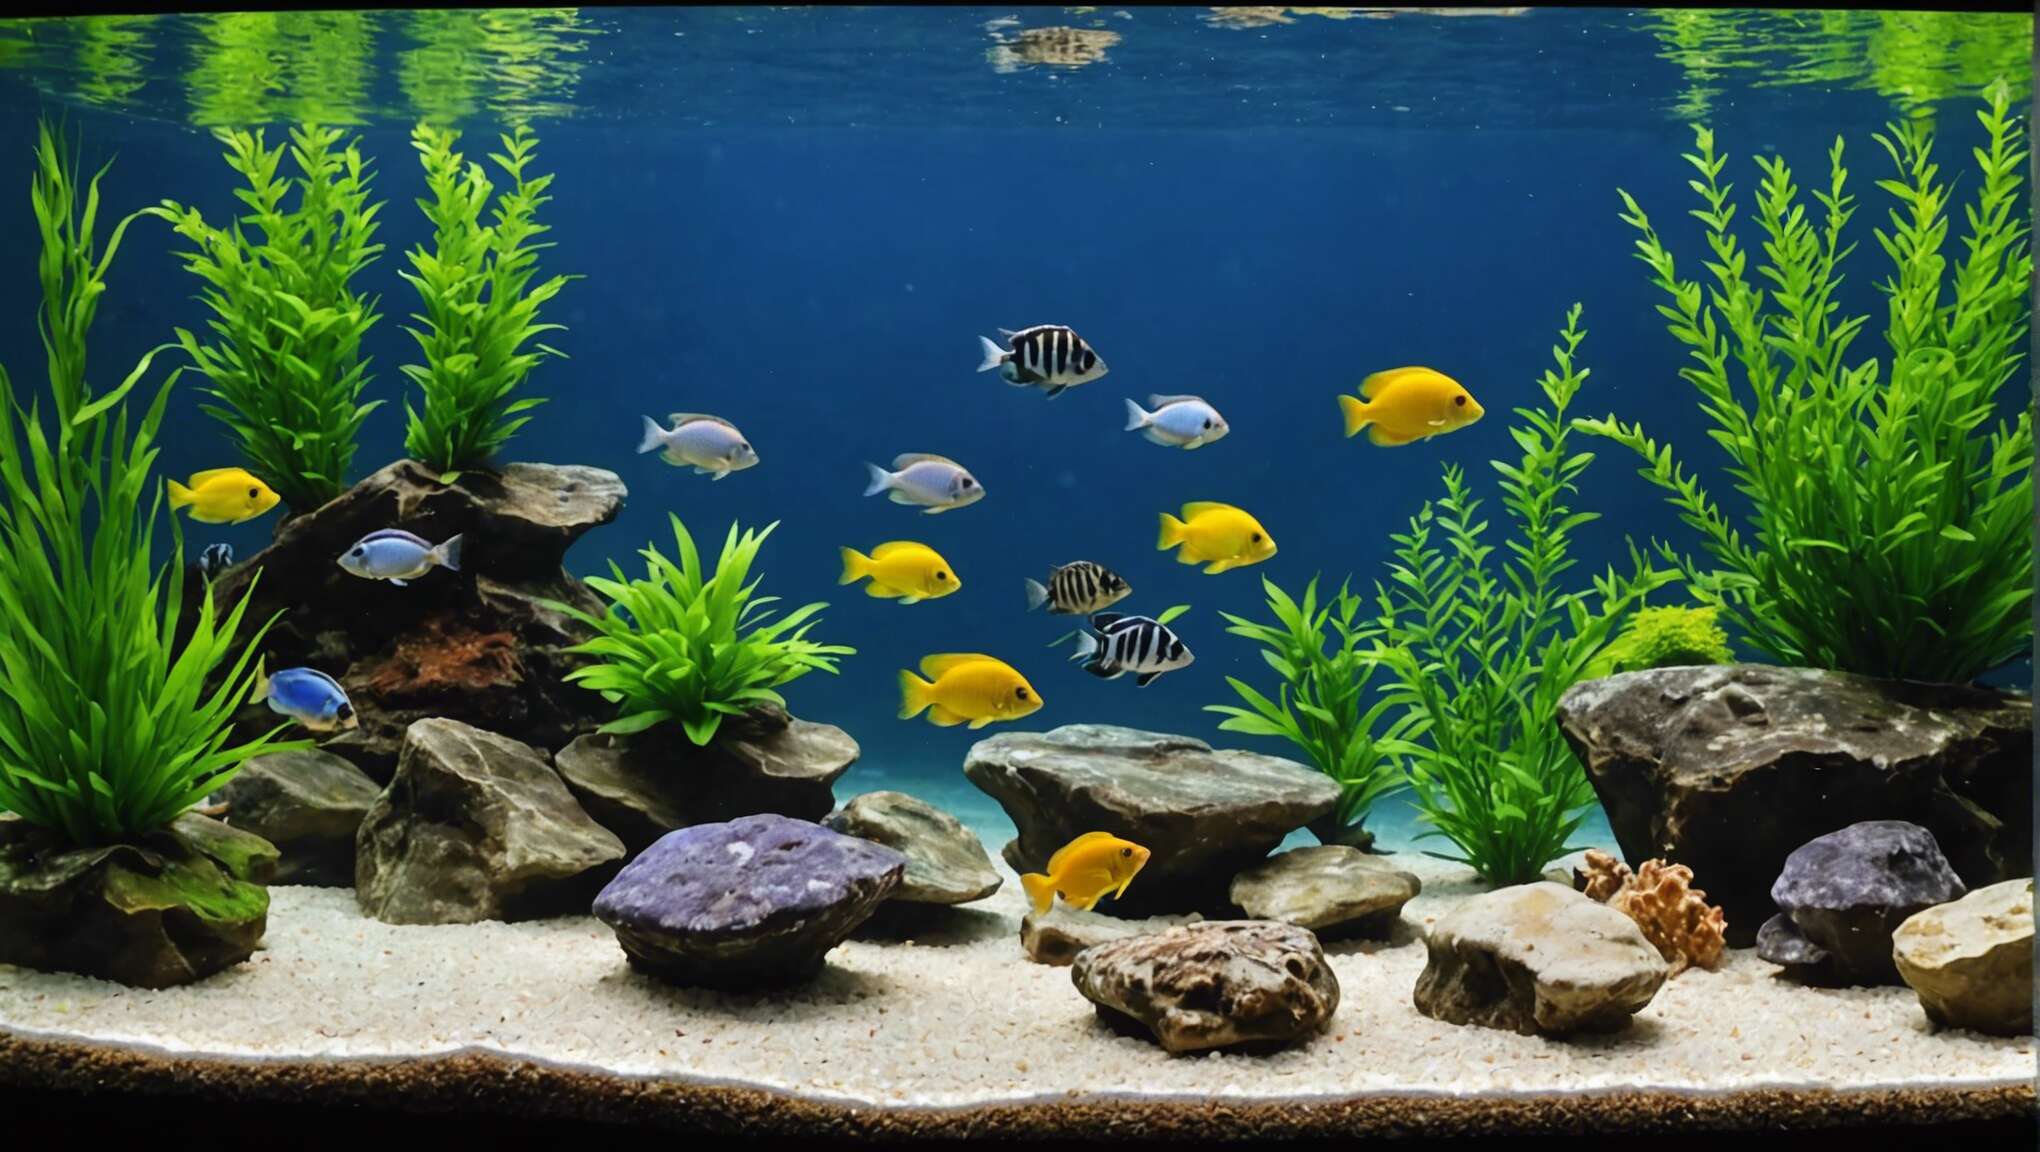 L'aménagement idéal de l'aquarium pour le bien-être des cichlidés